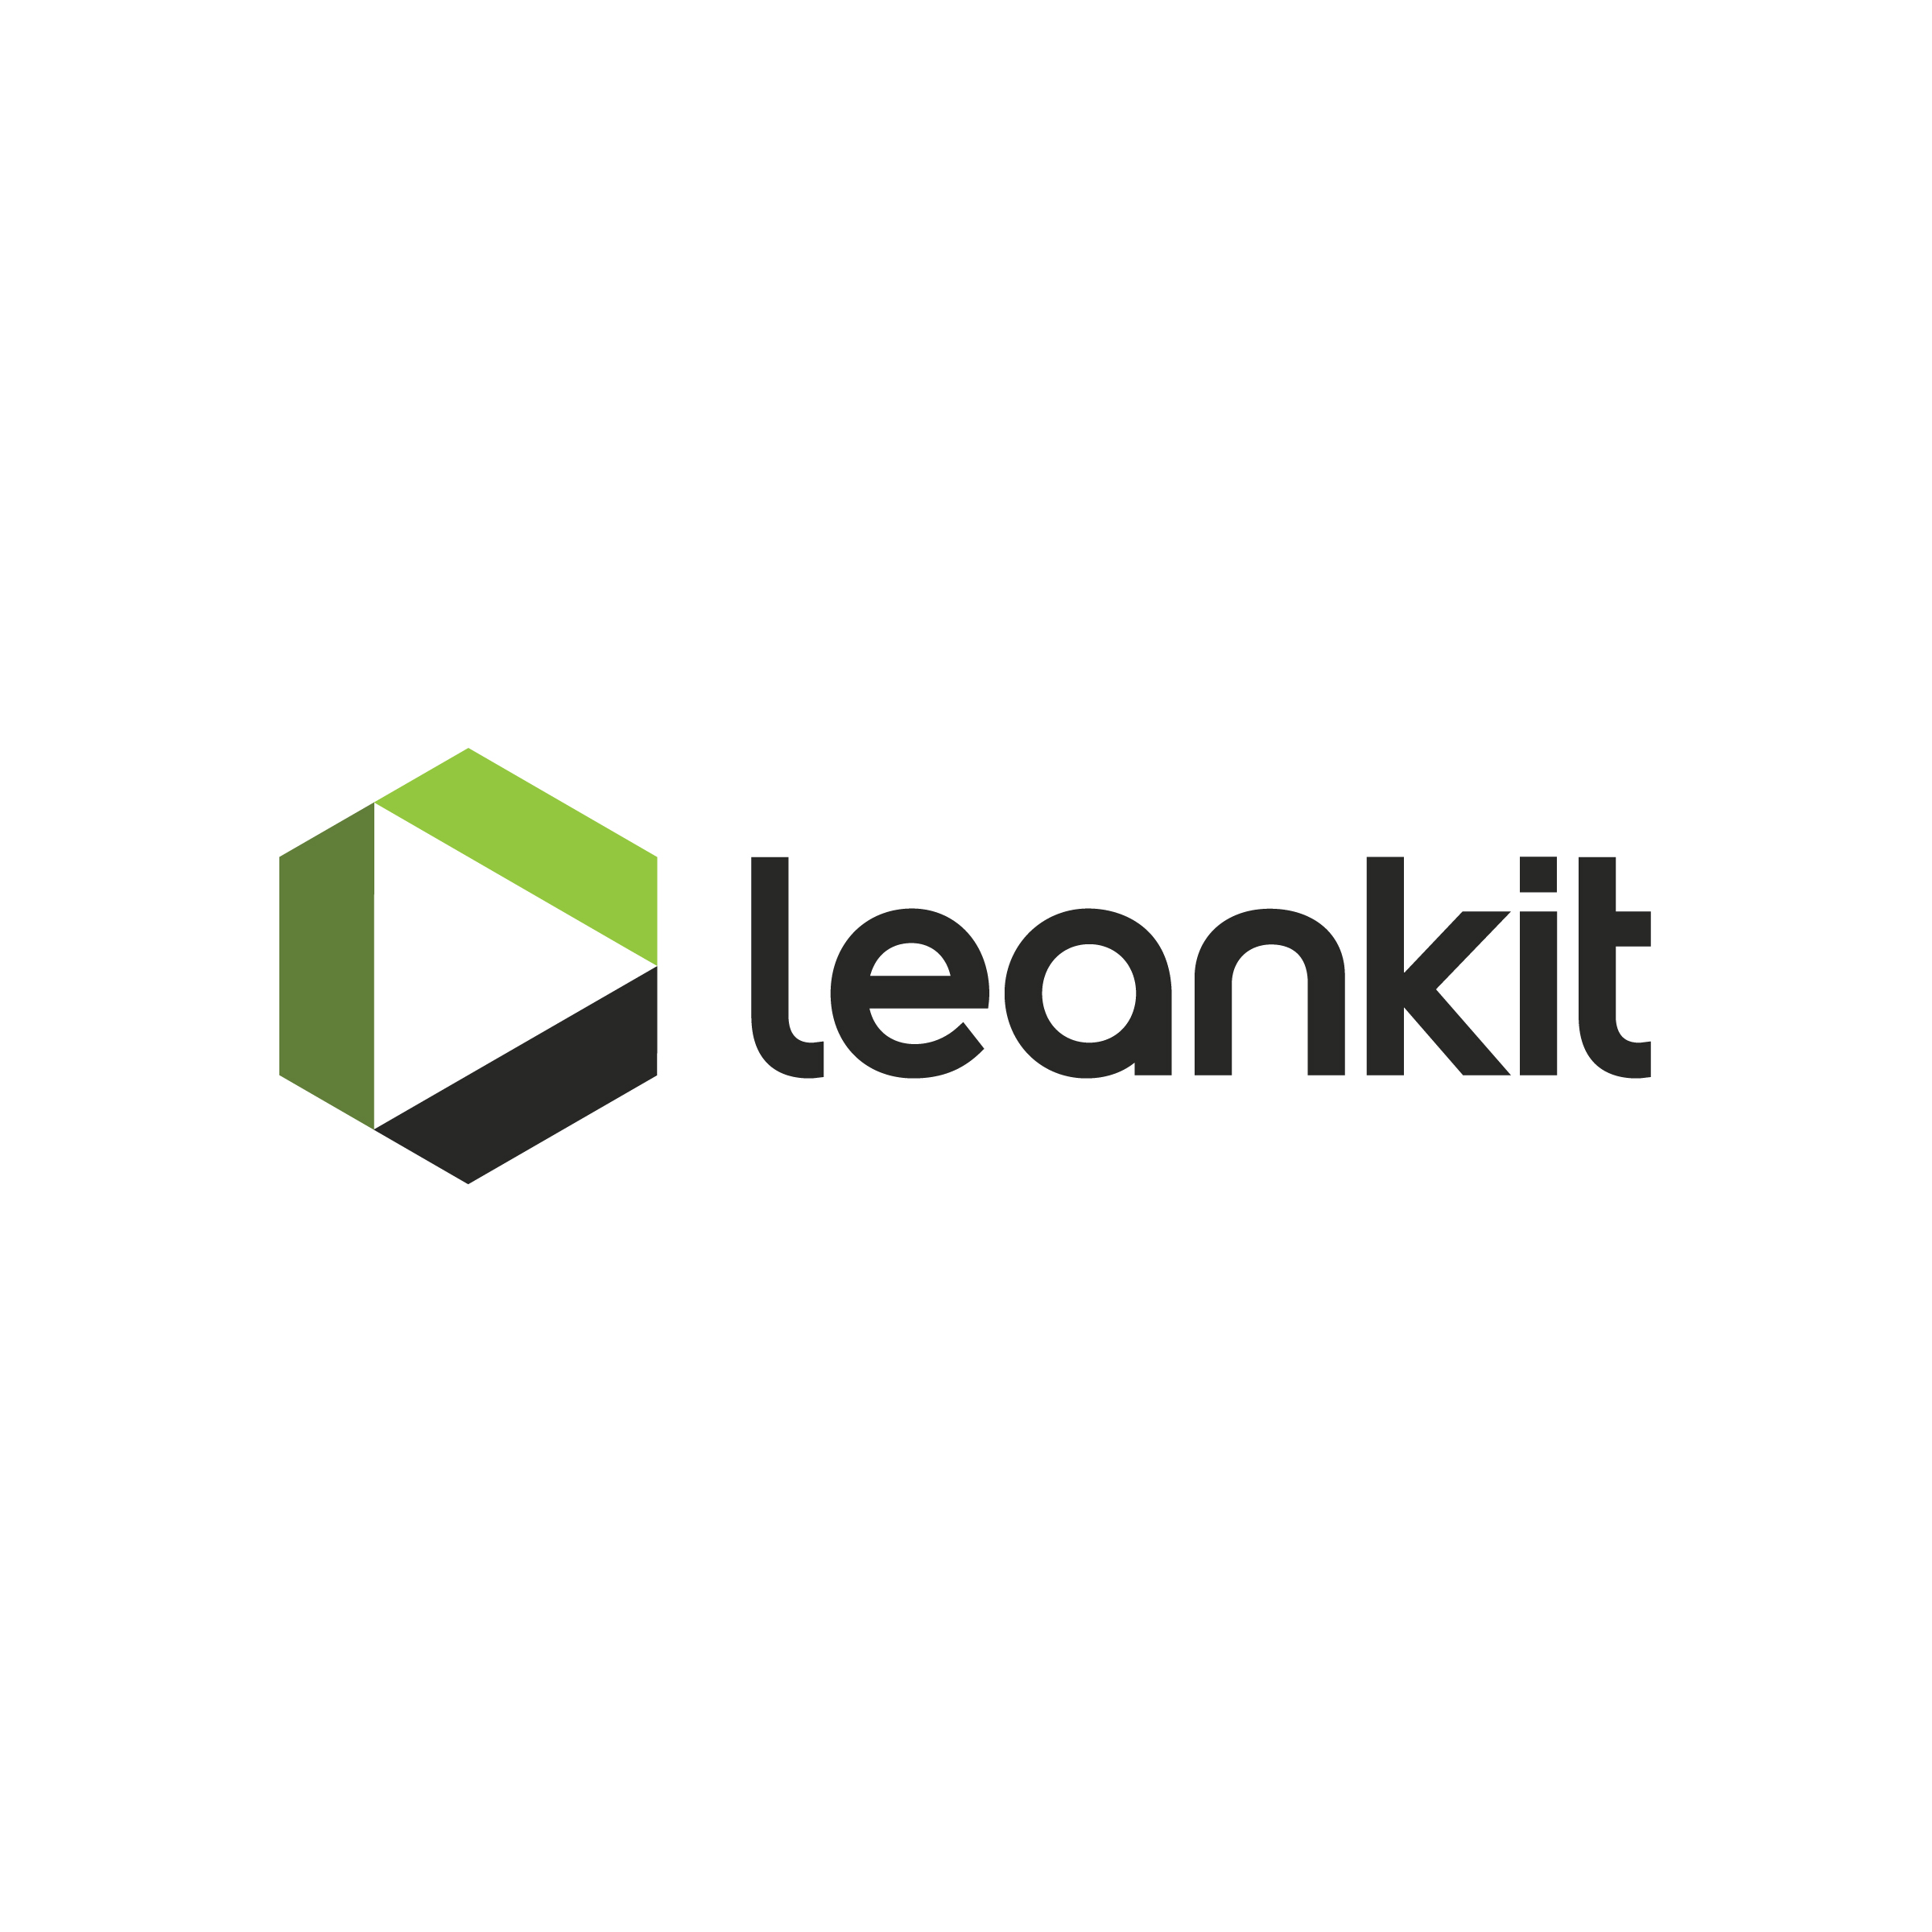 Leankit